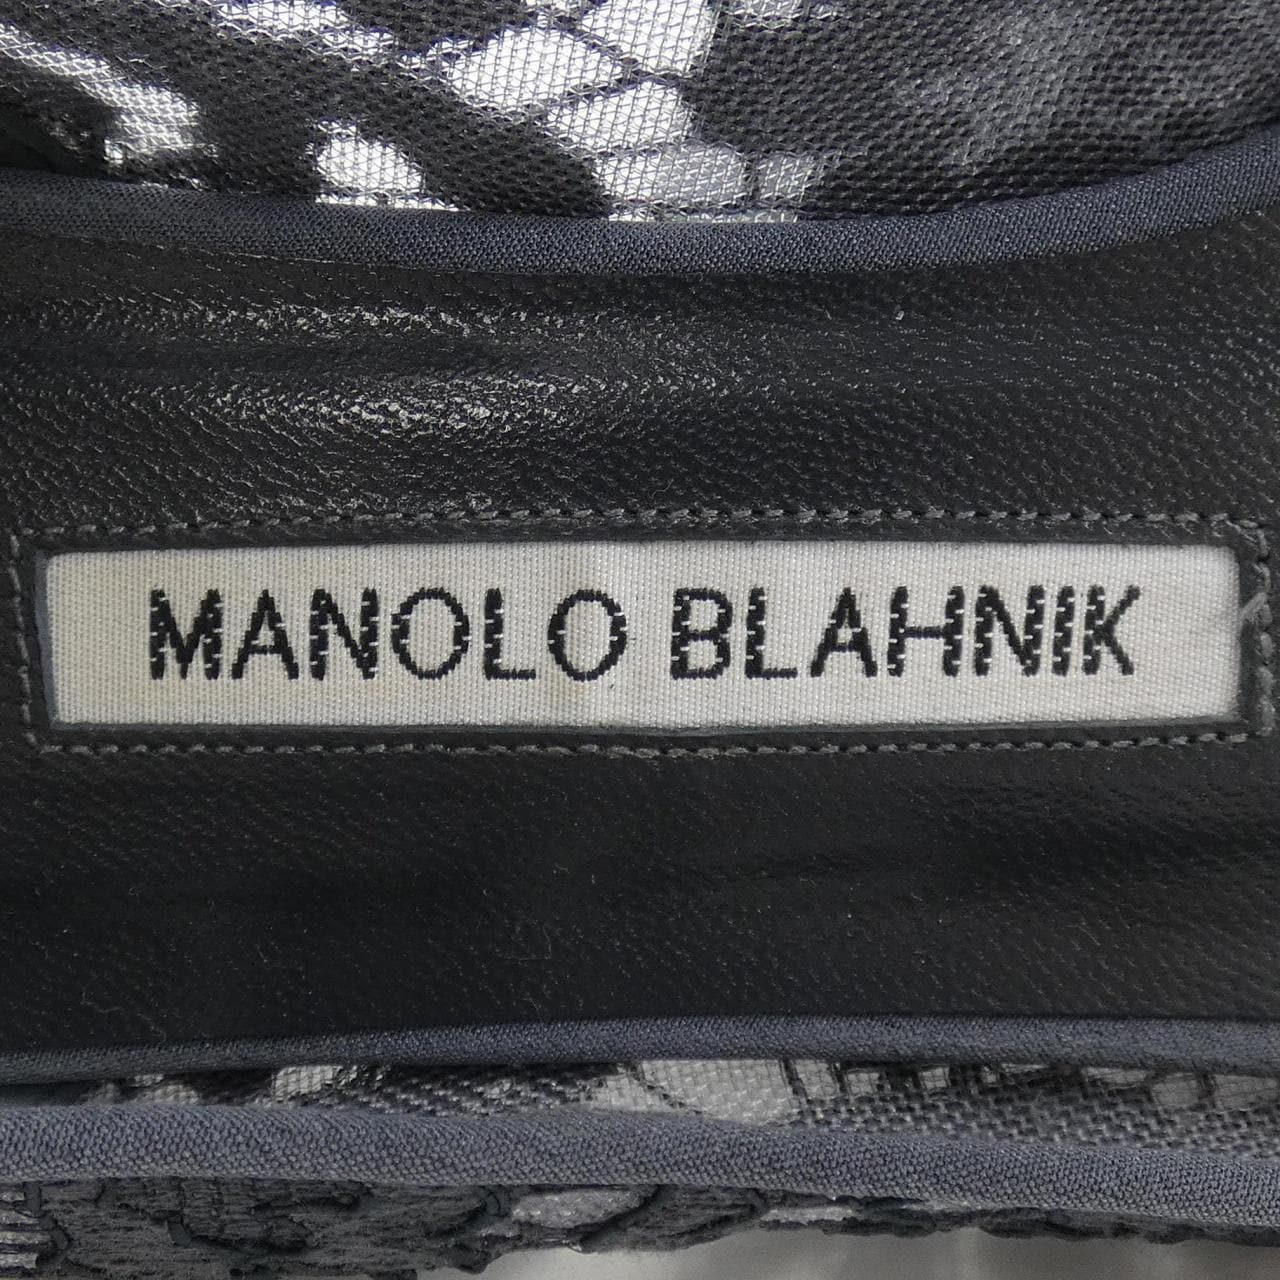 マノロブラニク MANOLO BLAHNIK フラットシューズ